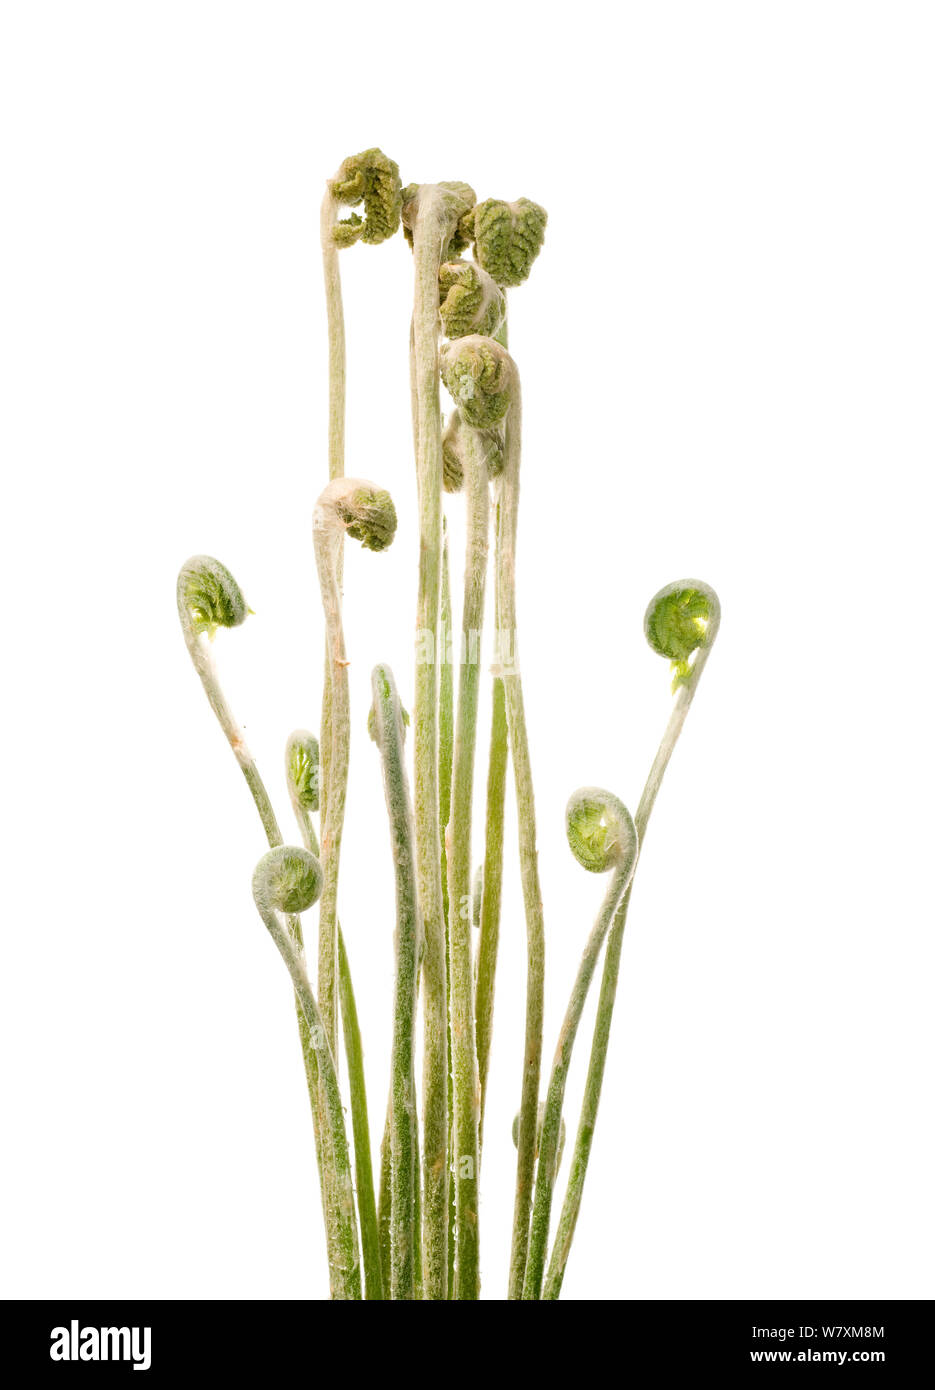 Osmundastrum cinnamomeum osmonde cannelle (frondes), sud des Appalaches, en Caroline du Sud, États-Unis, mars. Projet d'Meetyourneighbors.net Banque D'Images